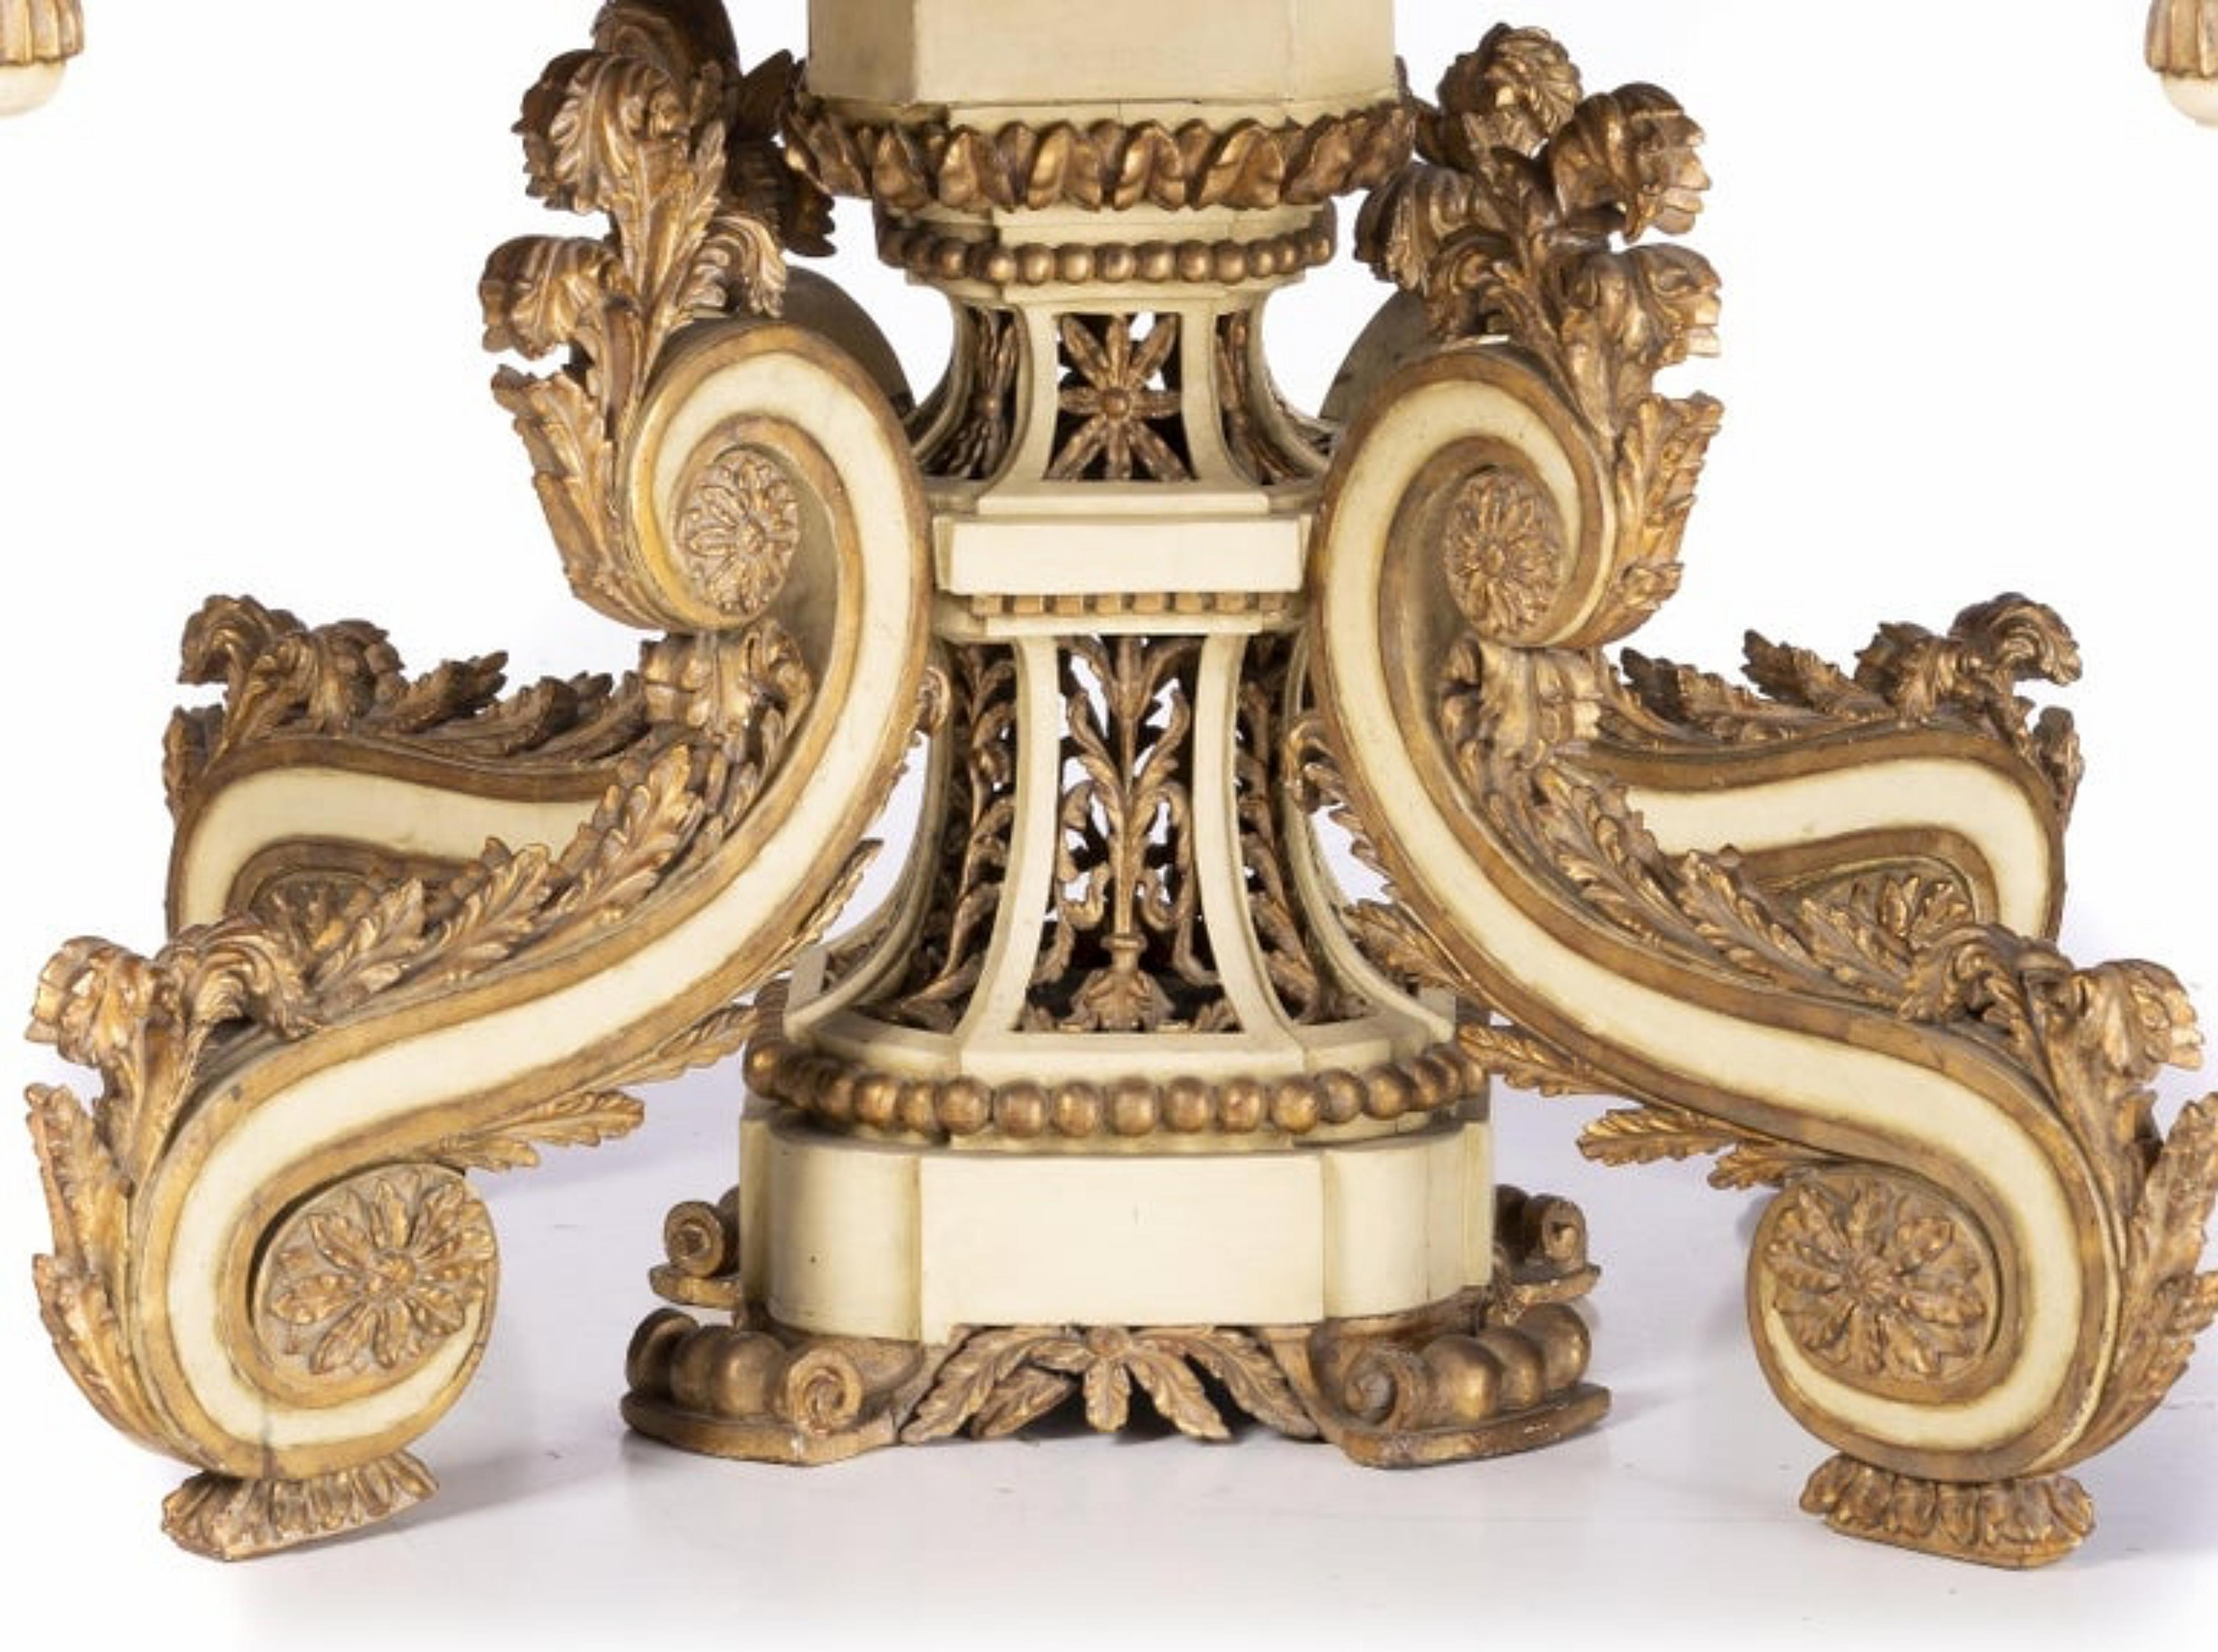 Tableau des appareils portugais

18ème siècle
En bois peint avec des sculptures dorées, la colonne centrale est abondamment sculptée et percée, et repose sur quatre pieds courbés. Petits défauts.
Dimensions : 90 x 110 x 120 cm : 90 x 110 x 120